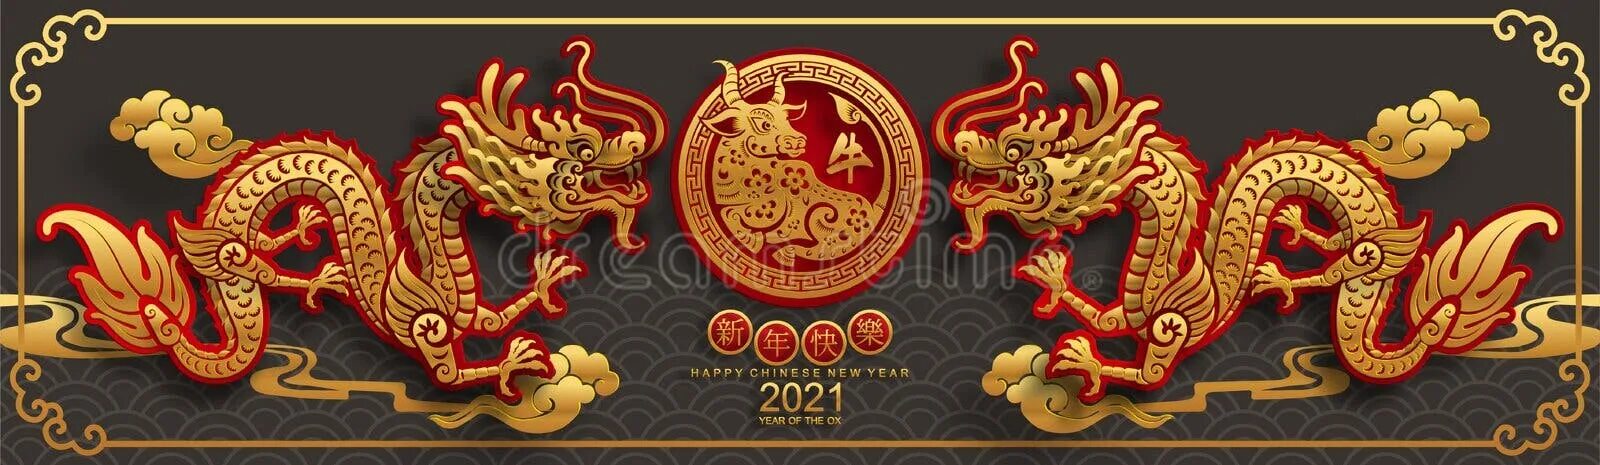 2024 год для года быка. Китайский новый год 2020 дракон. Китайский дракон 2024. С китайским новым годом 2021. Китайский новый год 2024 год дракона.